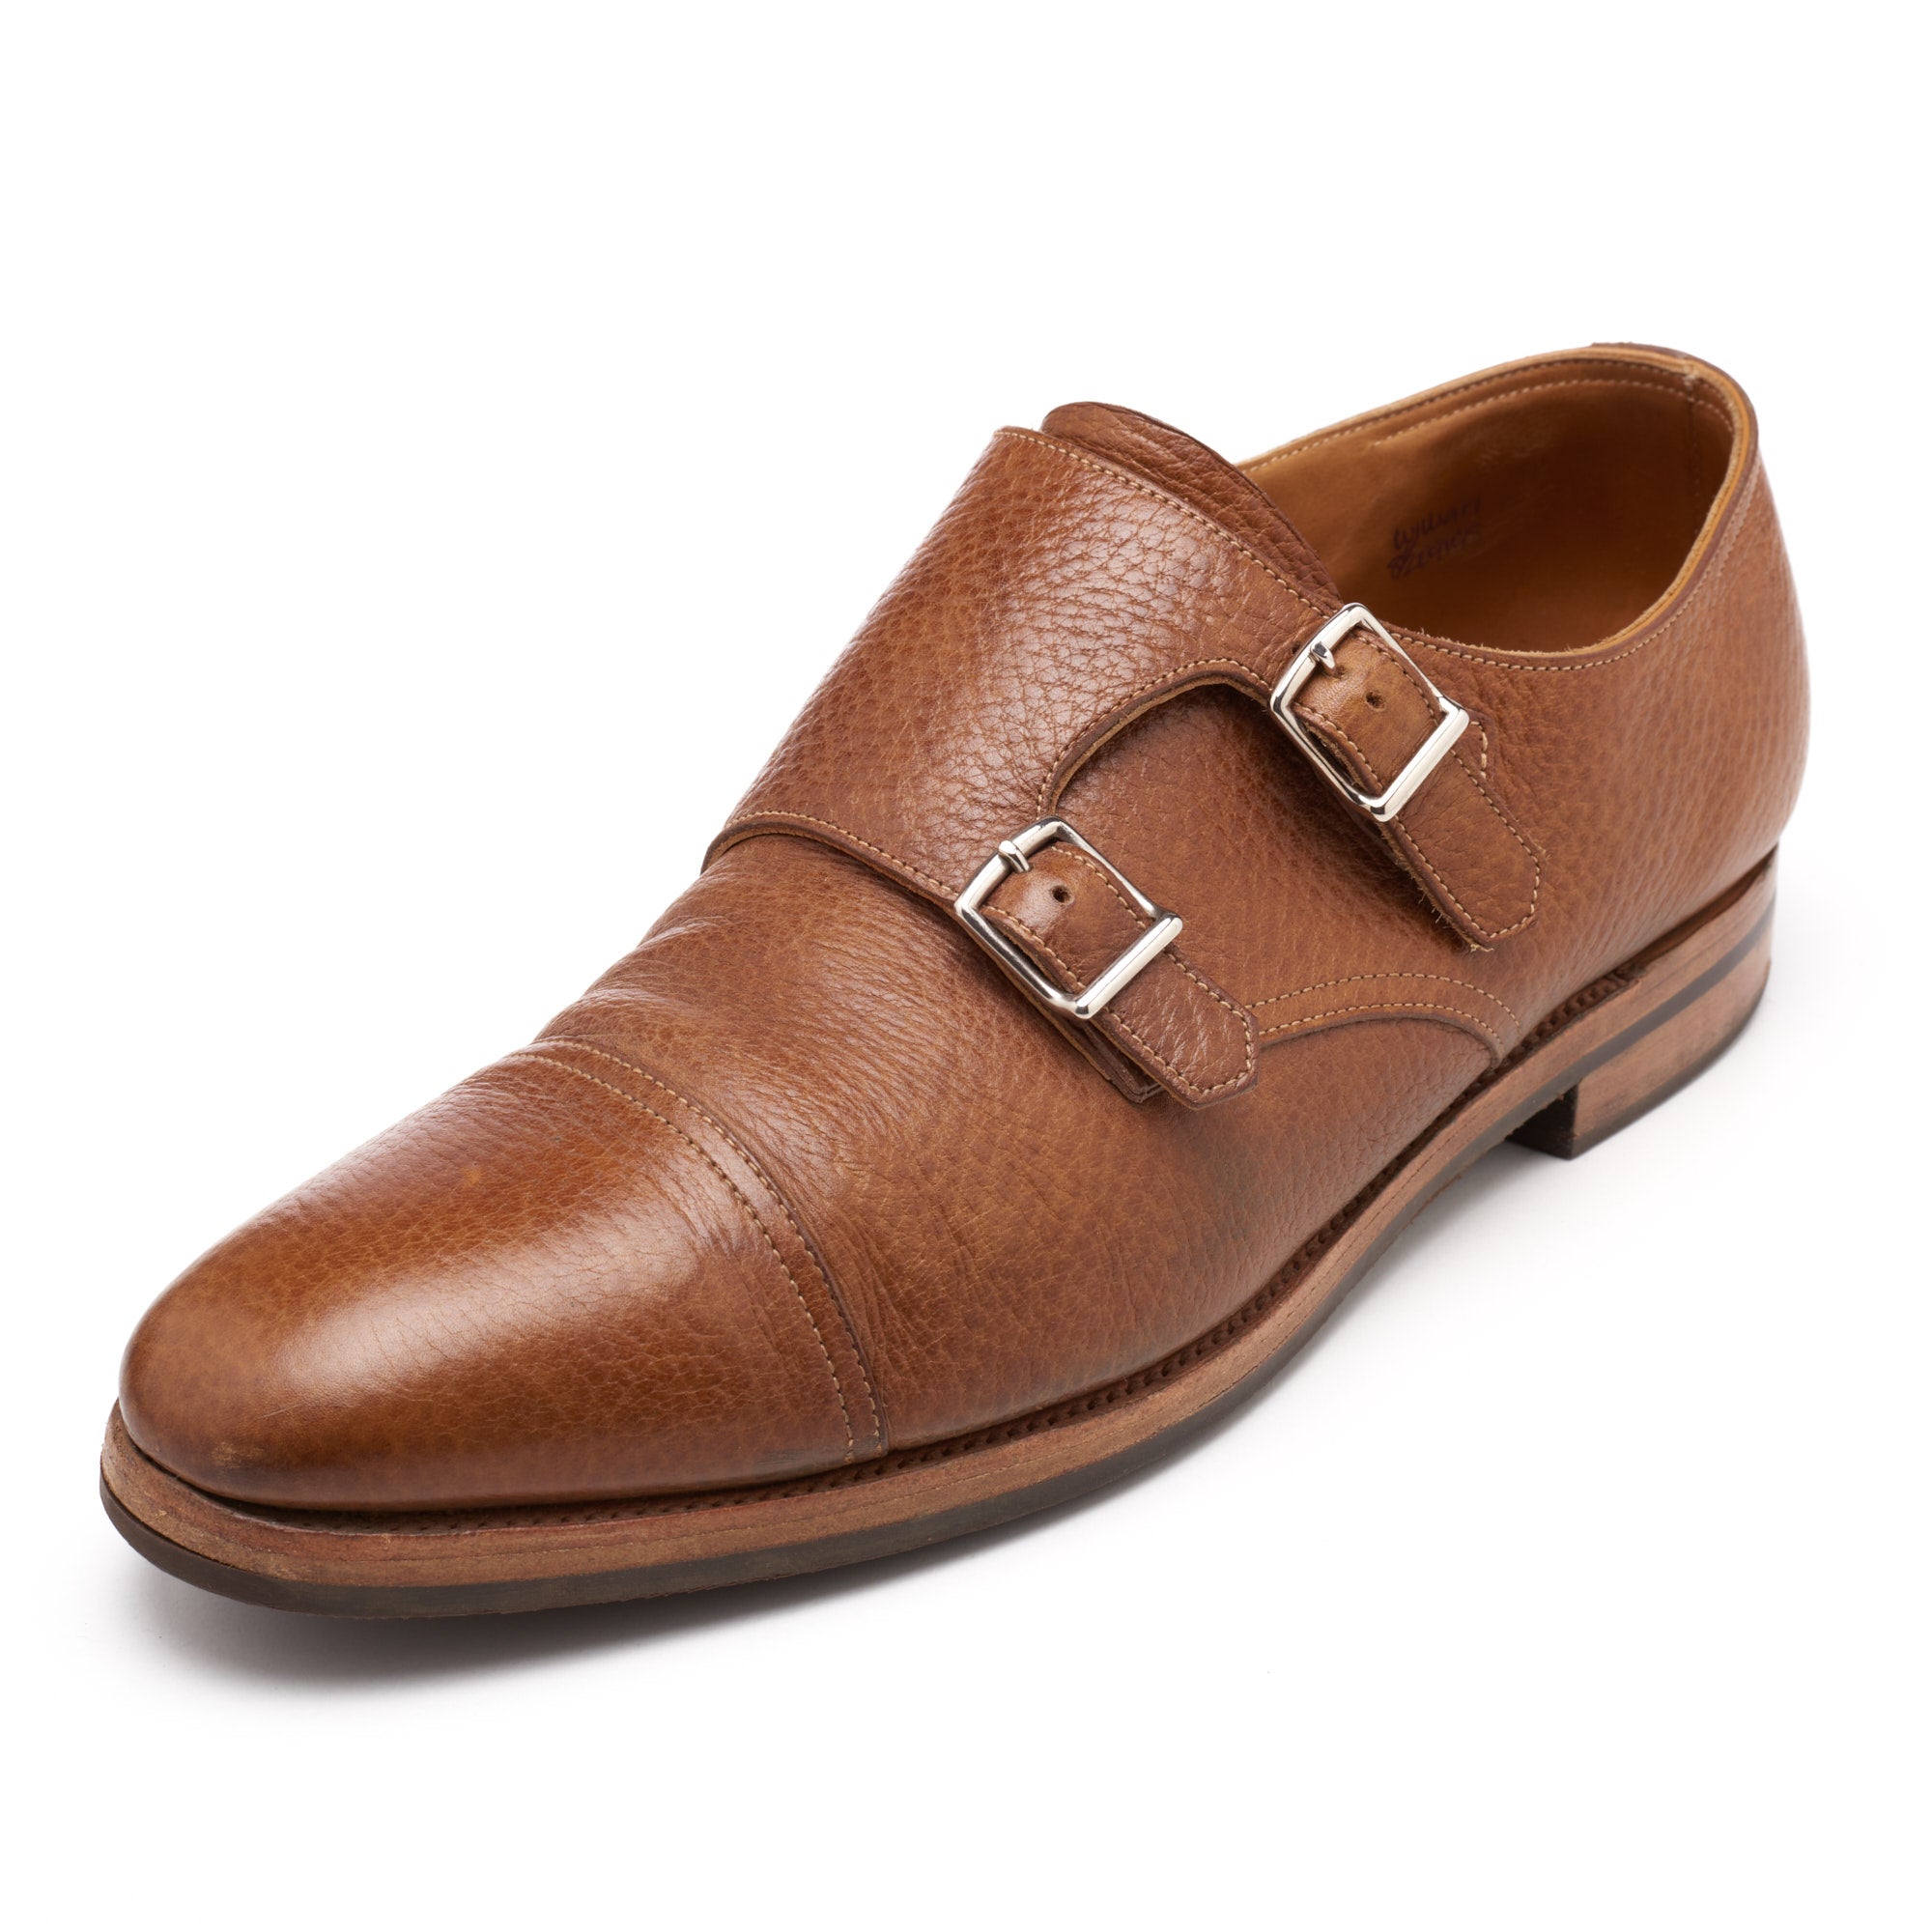 JOHN LOBB "William" Brown Leather Double Monk Shoes UK 8.5E US 9.5 Last 9795 JOHN LOBB